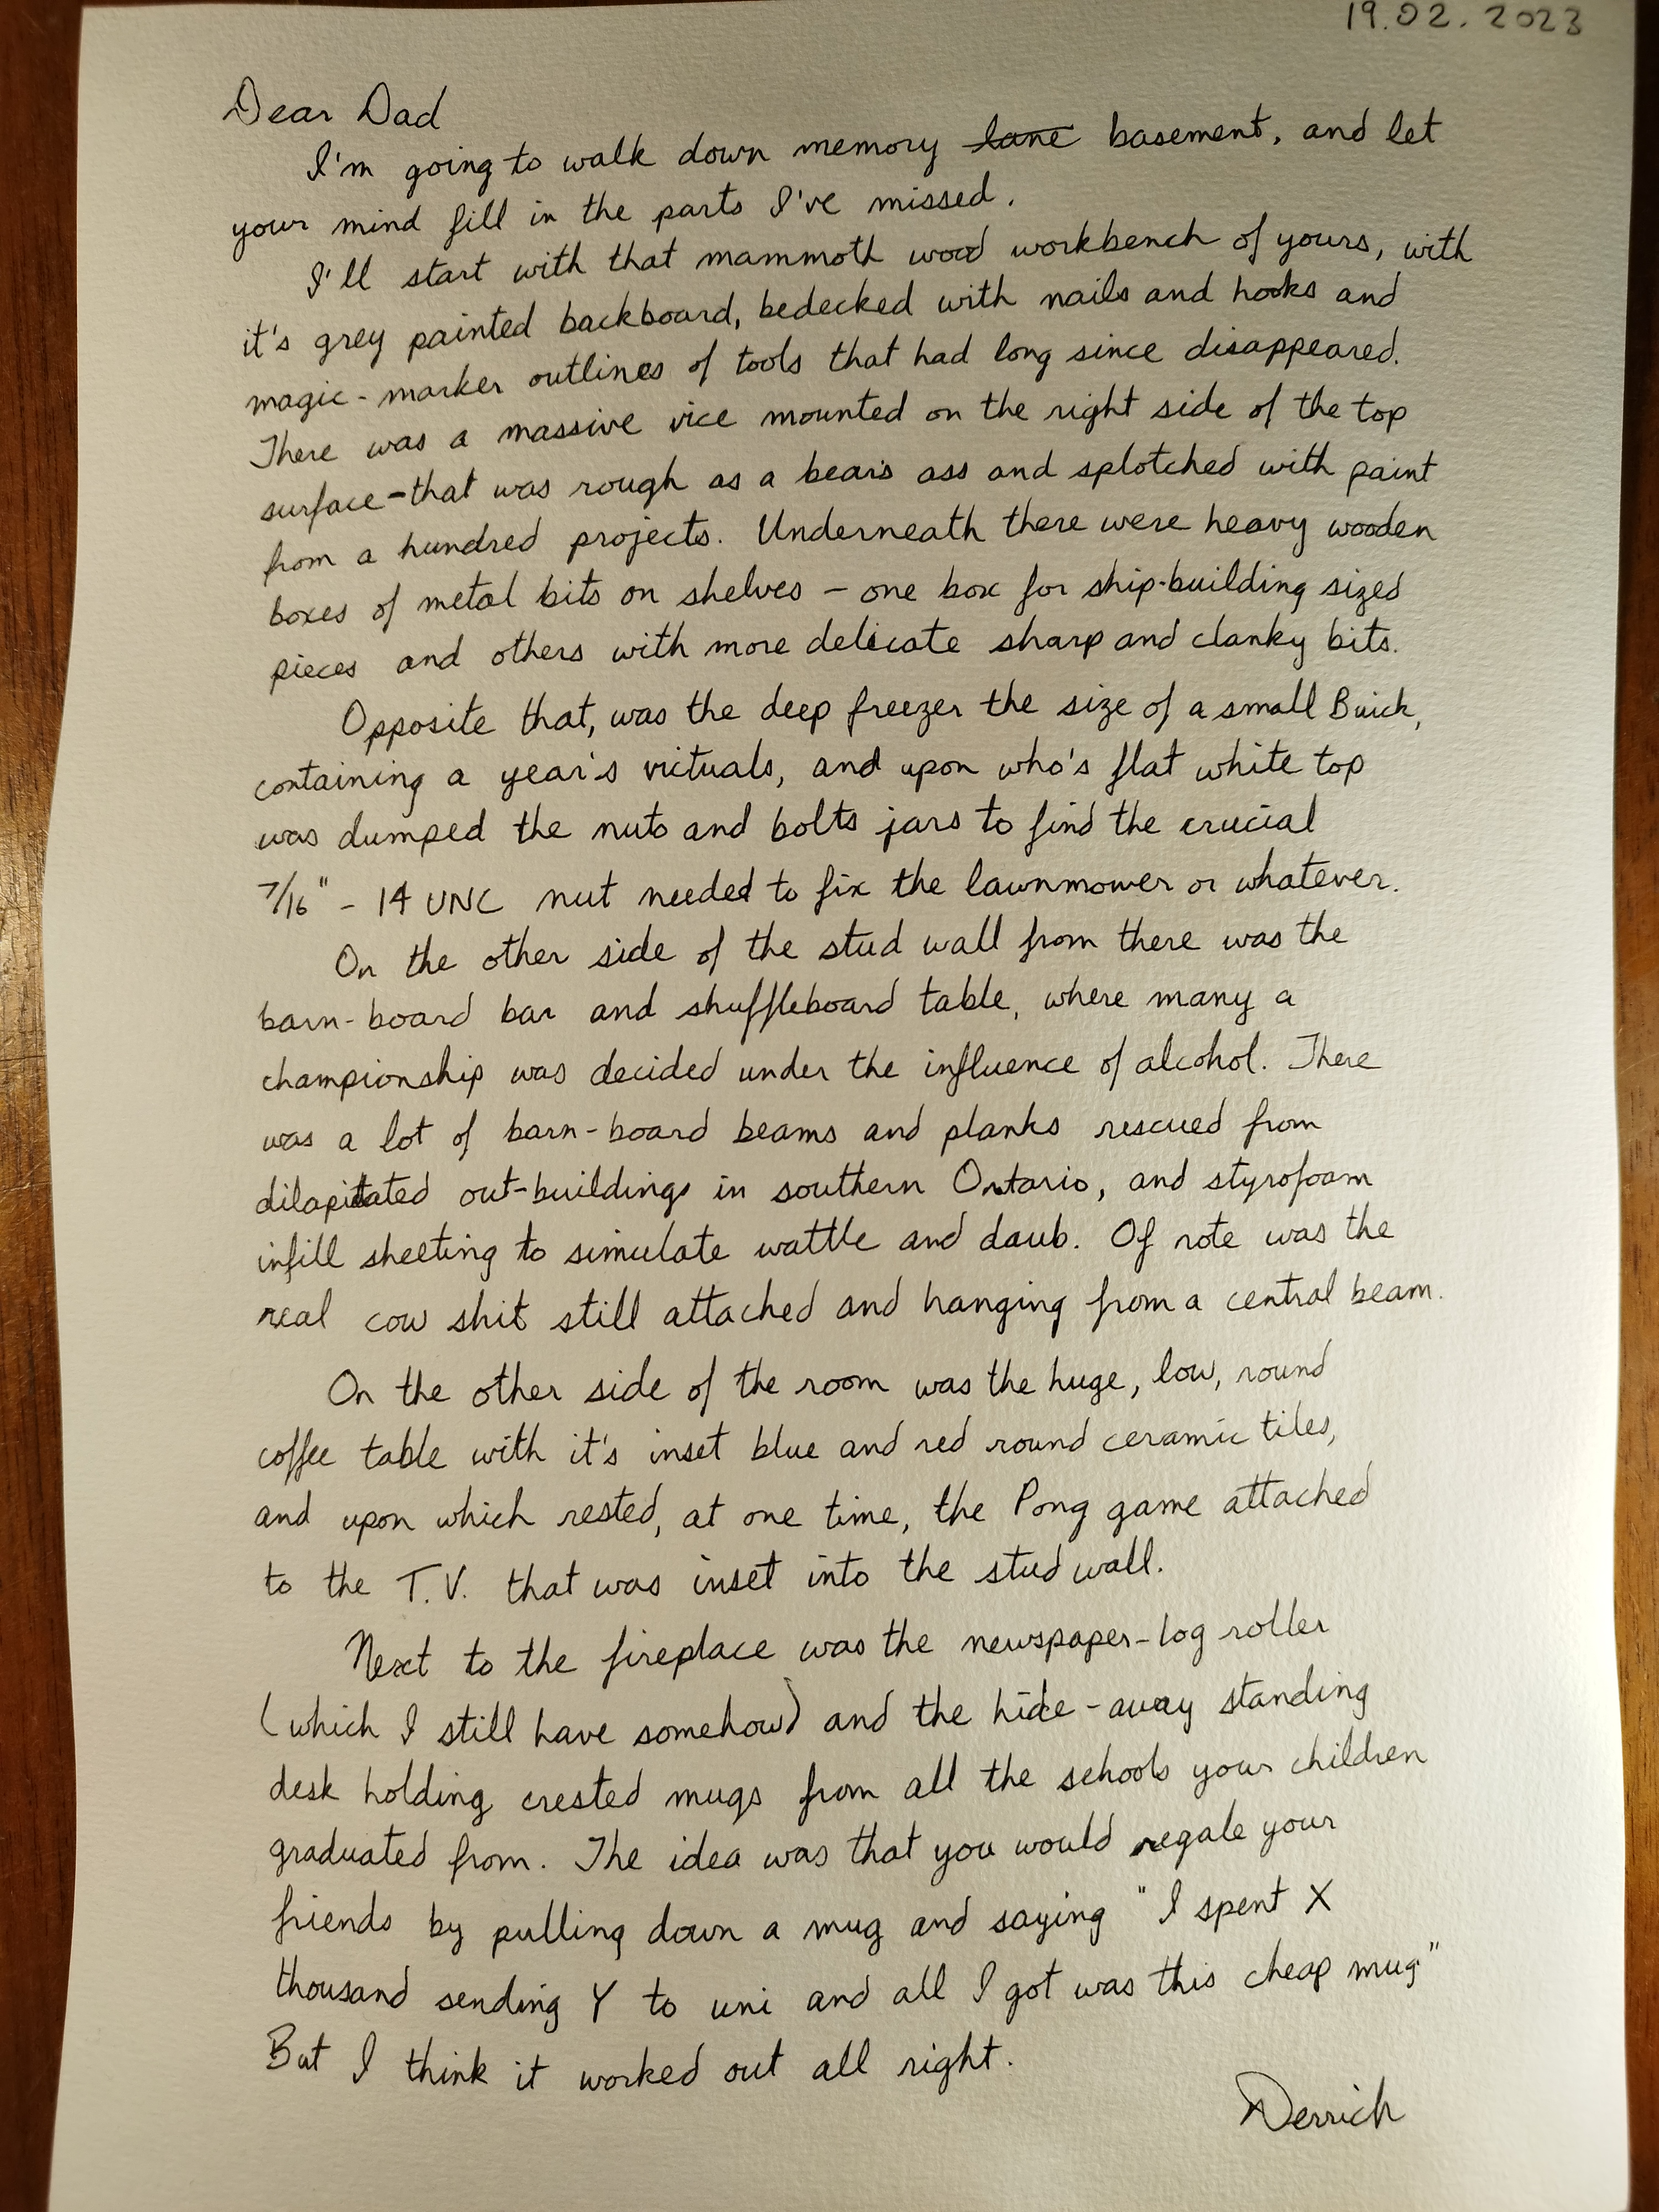 cursive letter about the basement